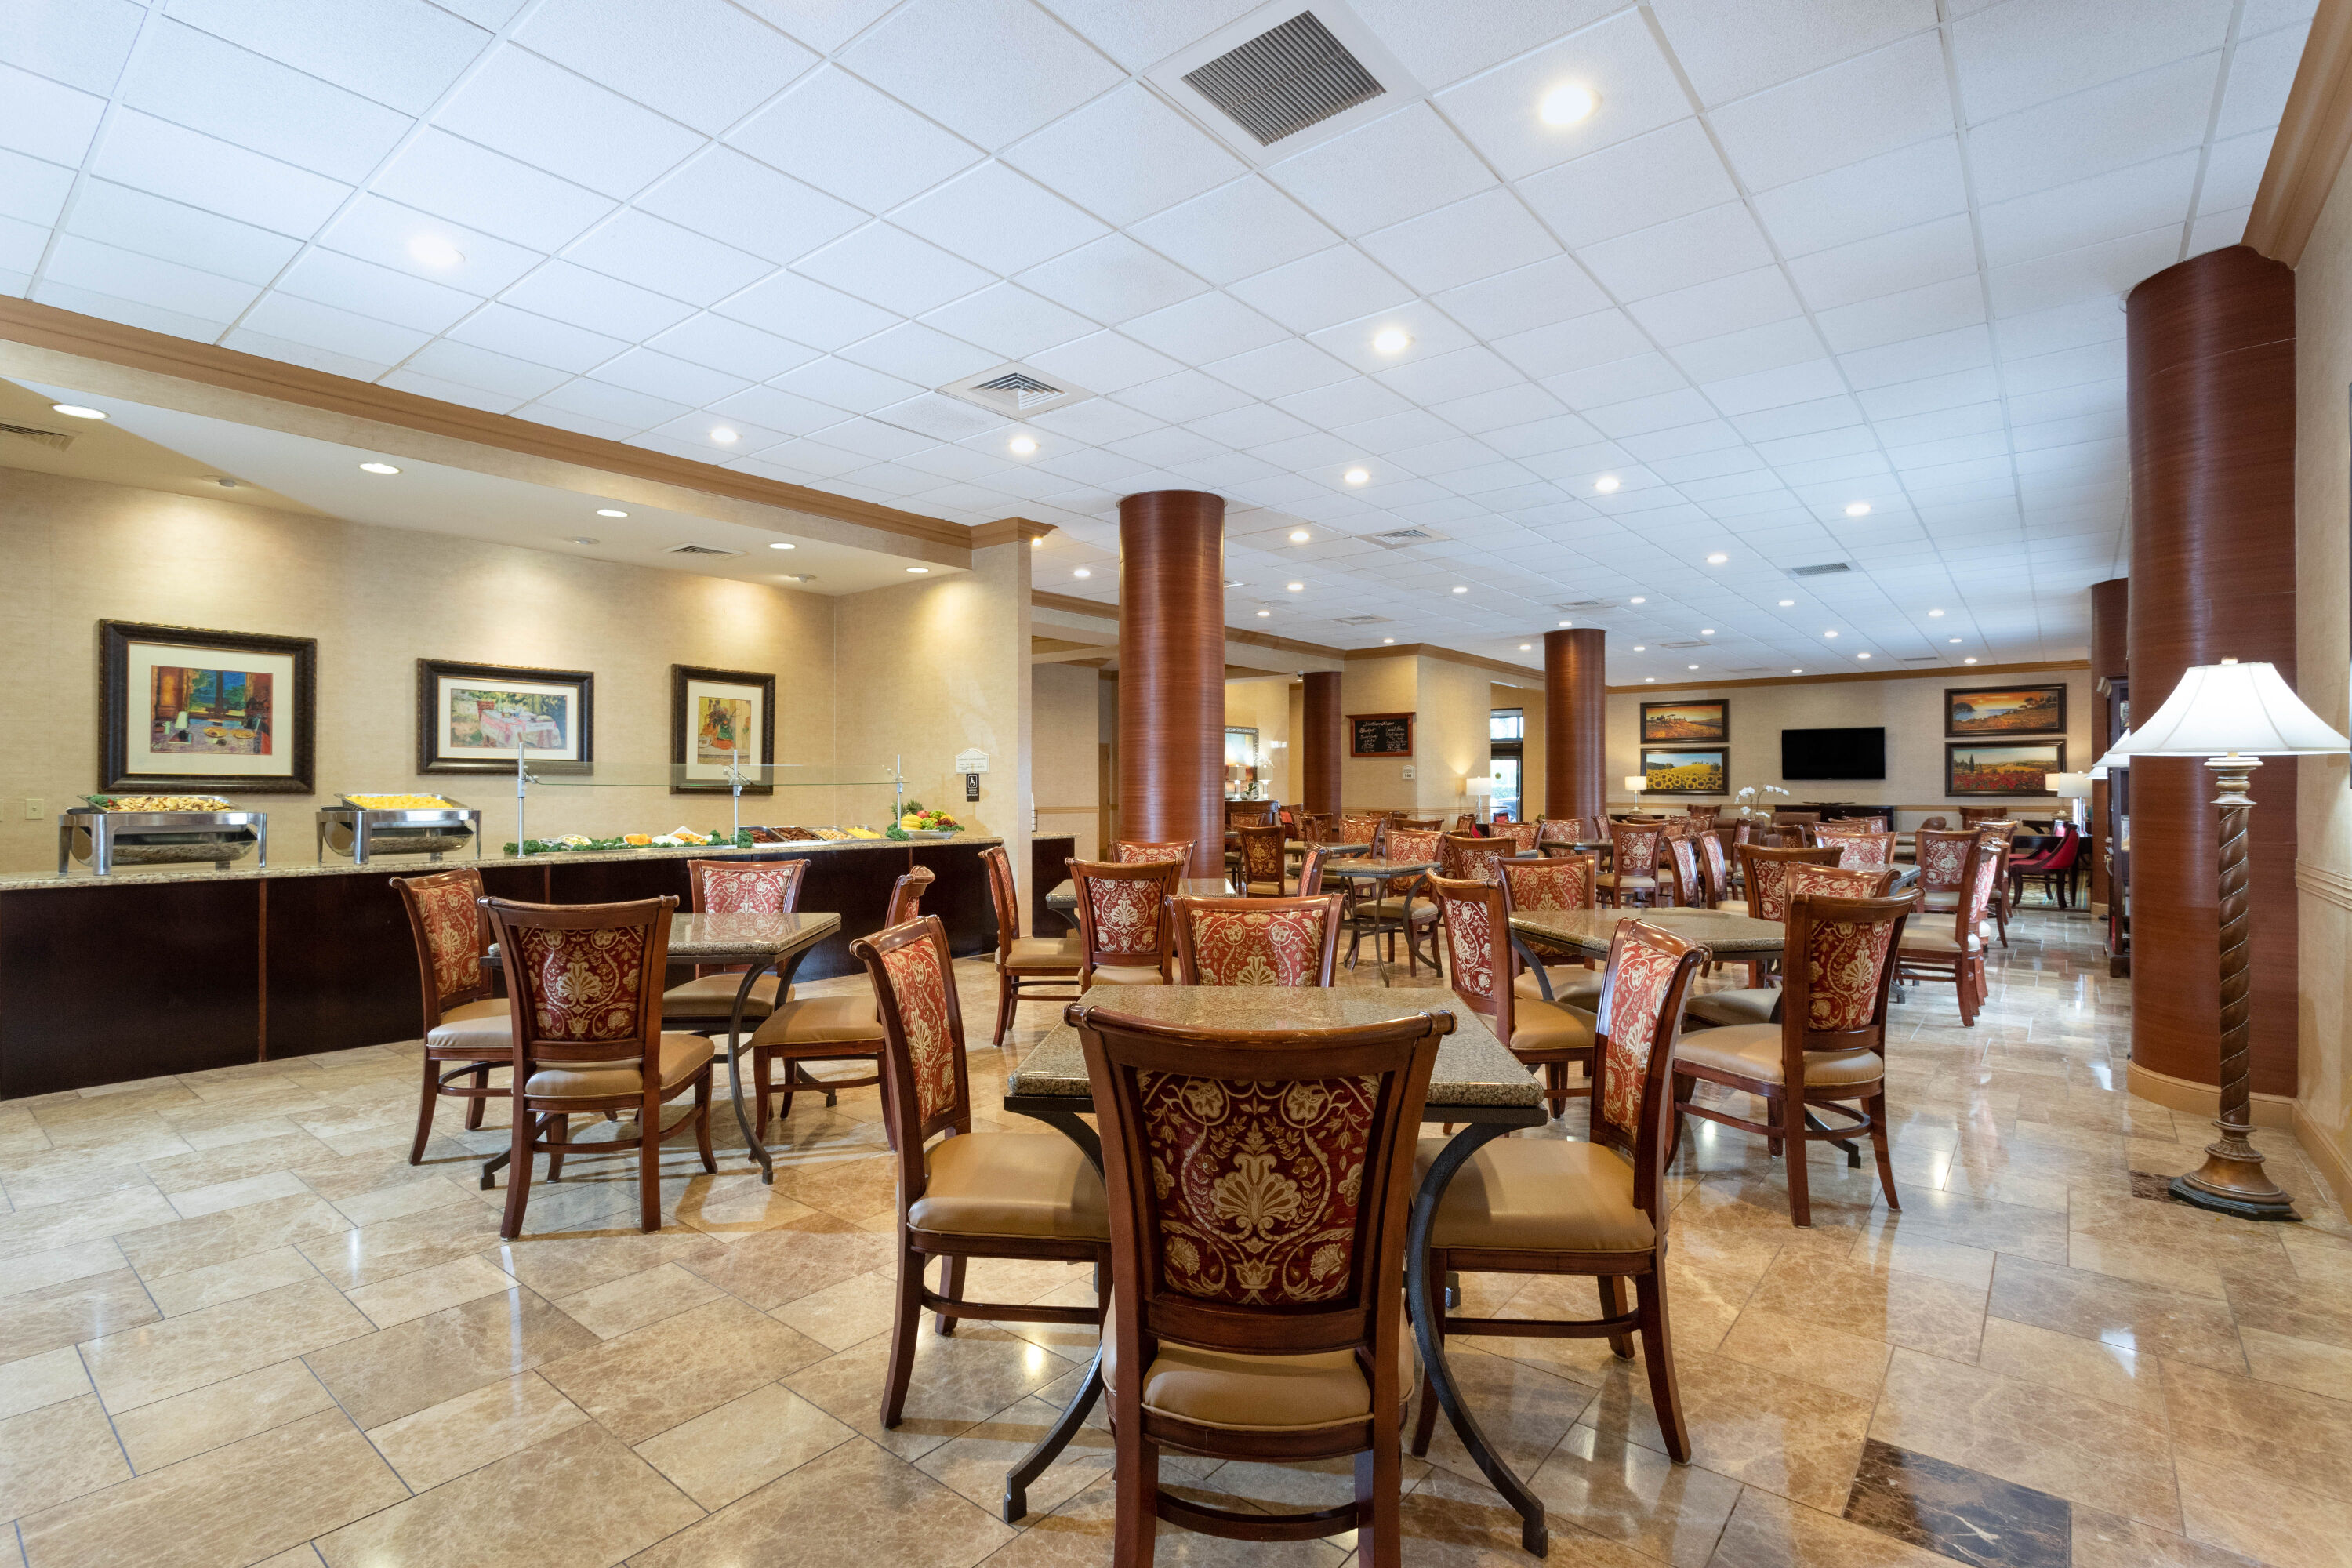 Hawthorn Suites by Wyndham West Palm Beach | West Palm Beach, FL Hotels